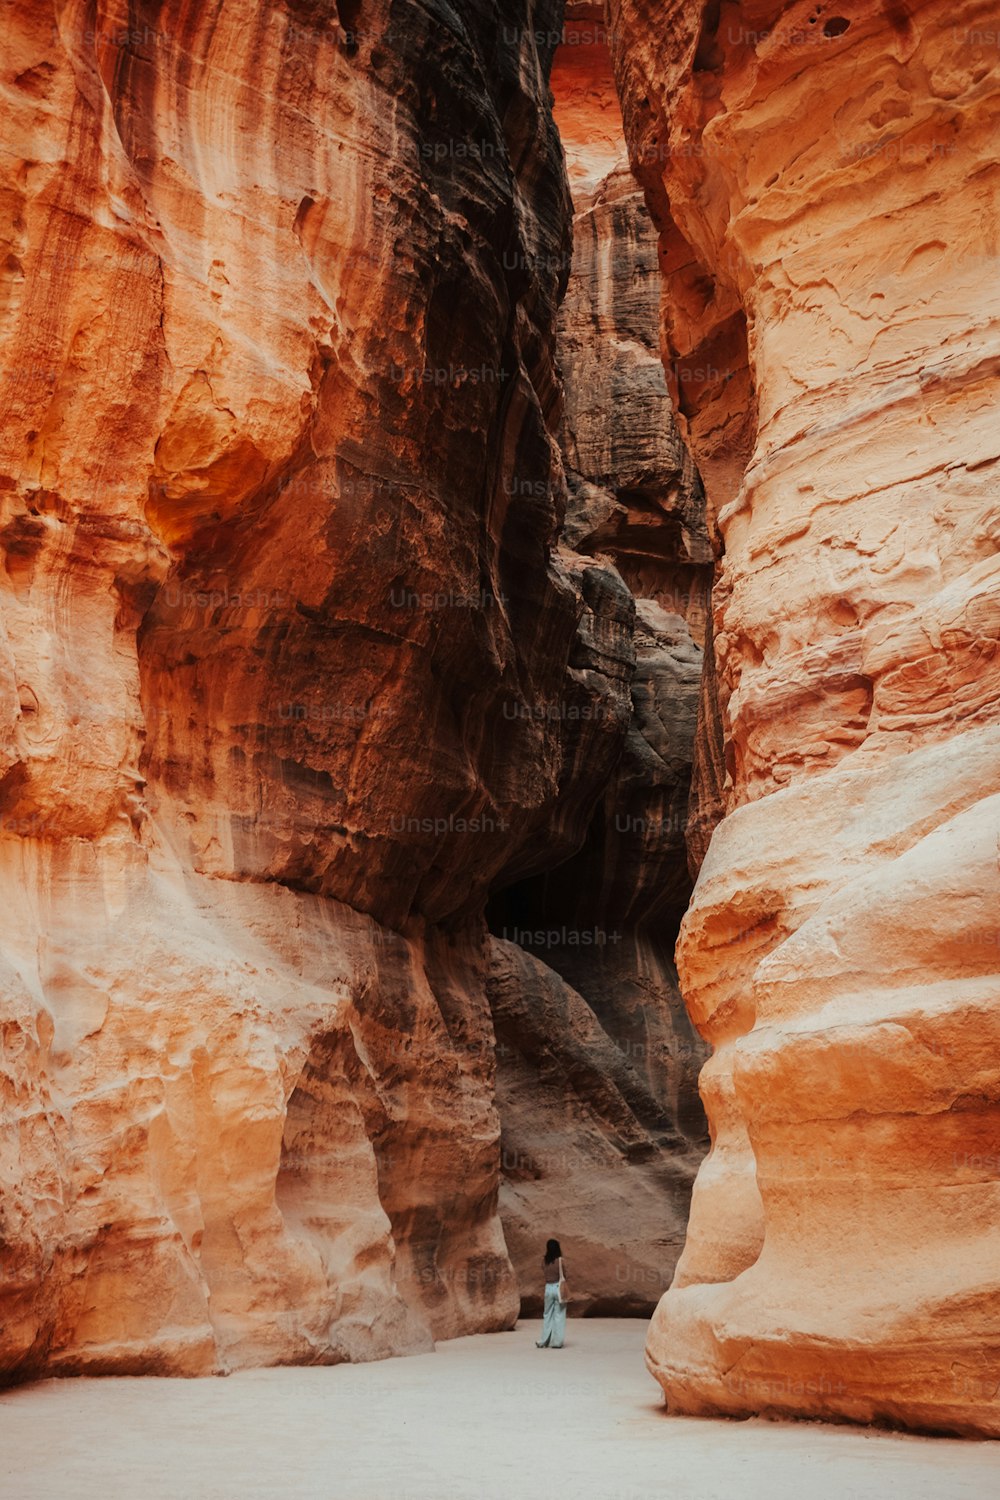 Una persona in piedi nel mezzo di un canyon